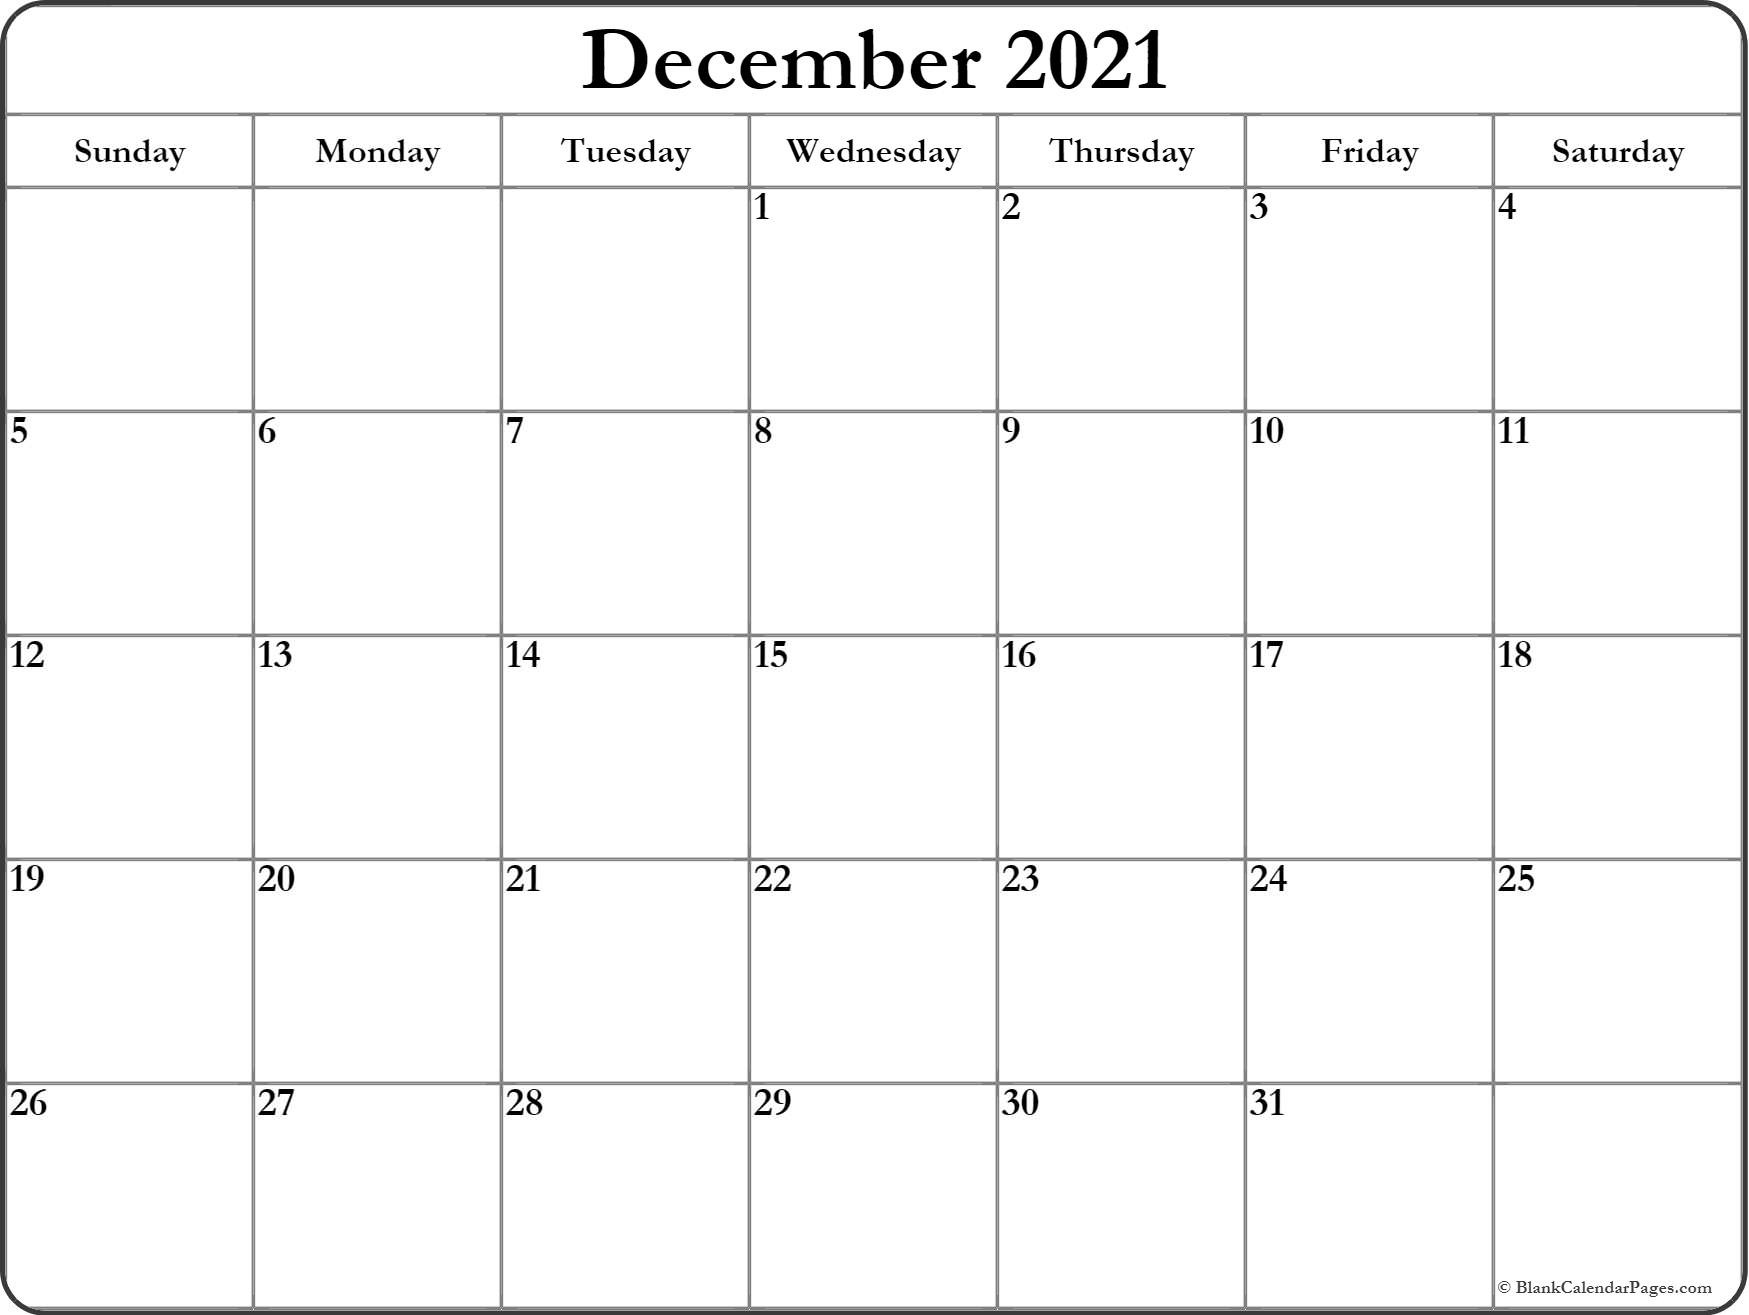 CAL=December 2021 calendar